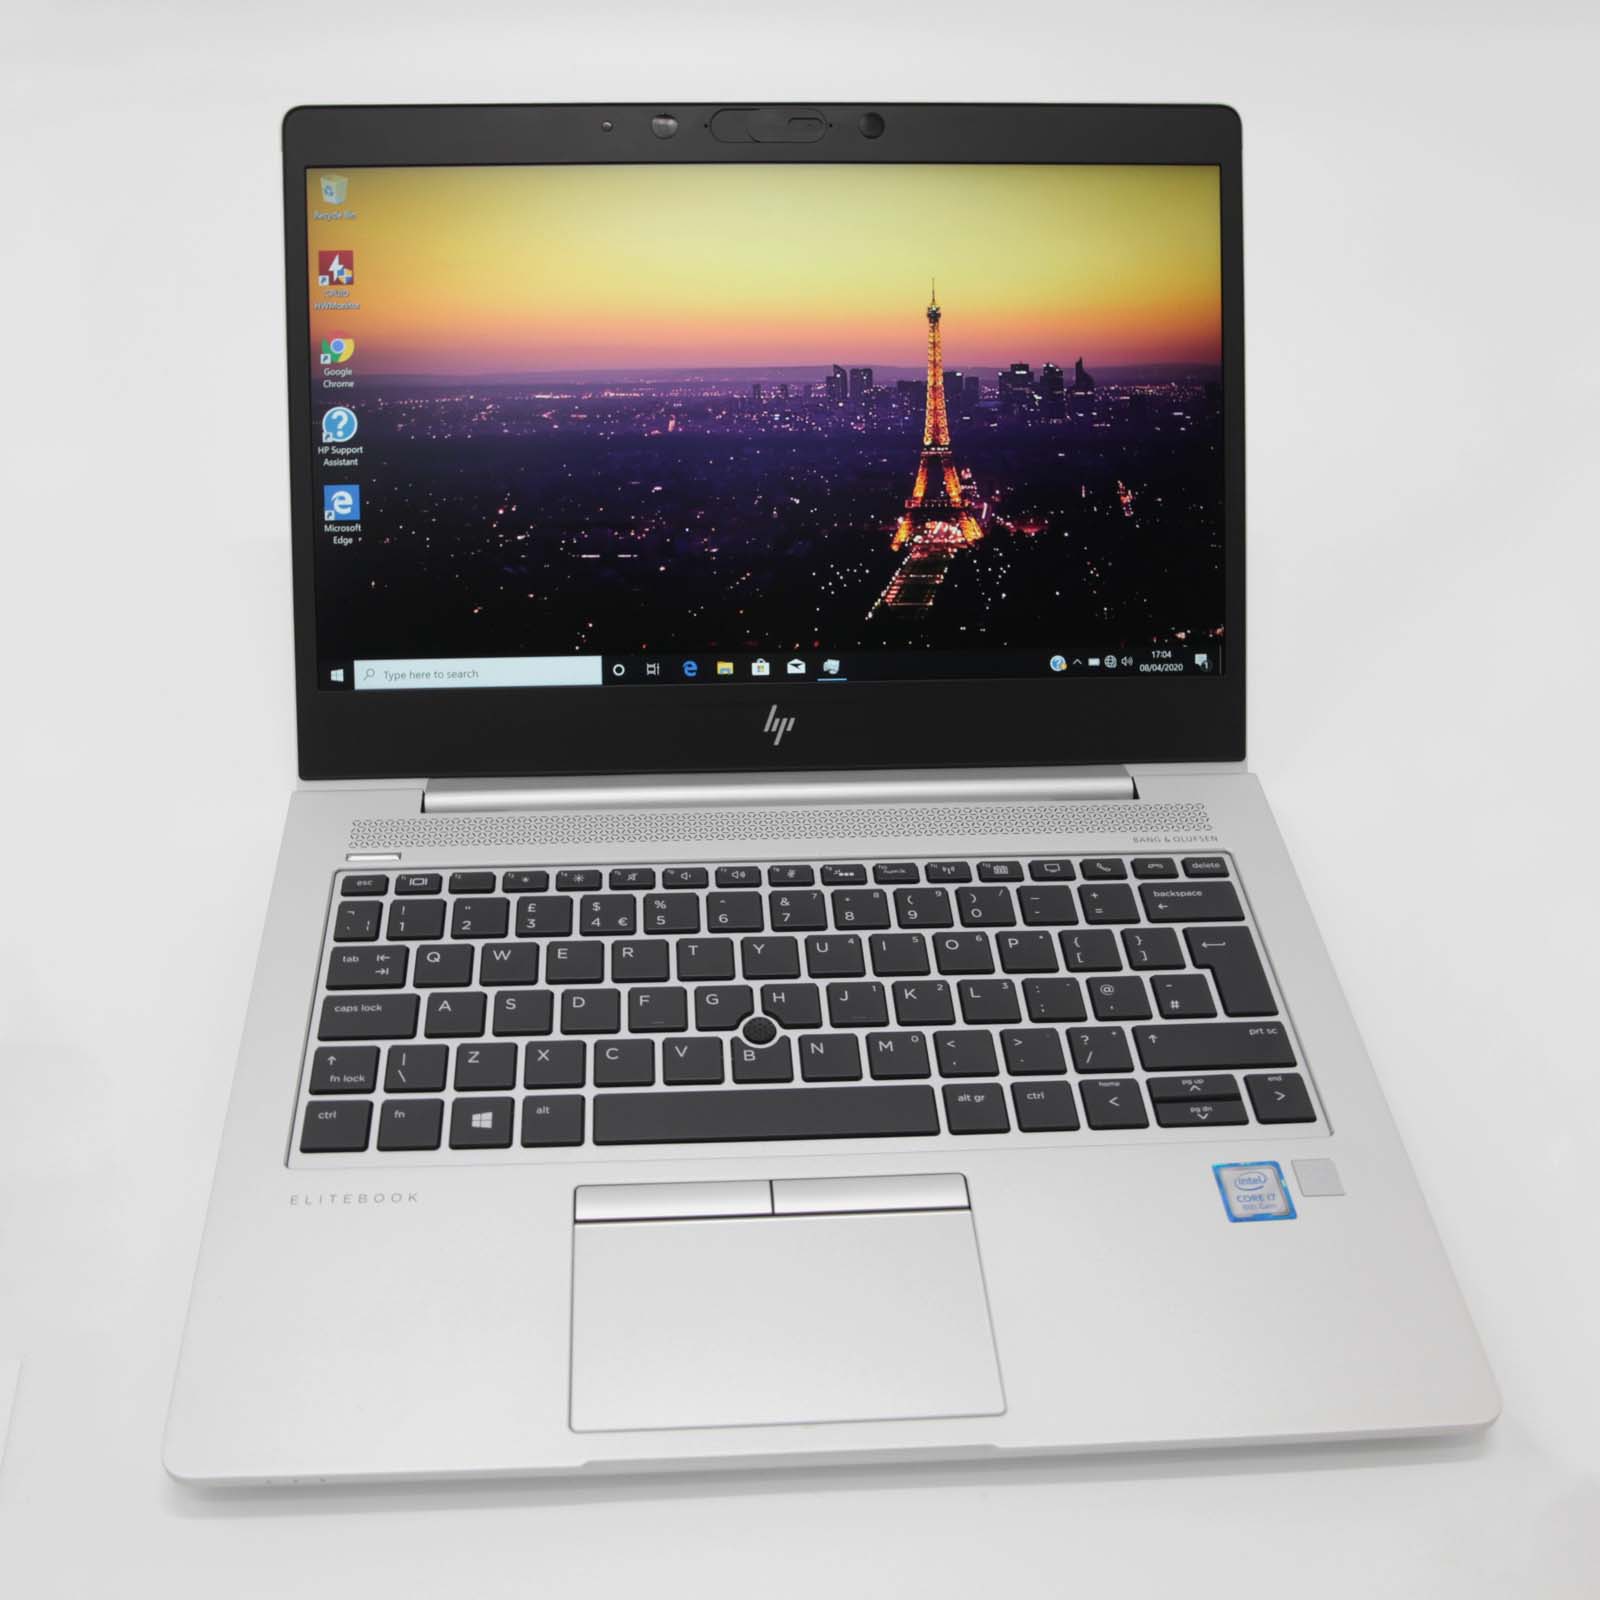 HP EliteBook 830 G5 Laptop: 8th Gen Intel Core i7, 16GB RAM, 256GB SSD, Warranty - CruiseTech